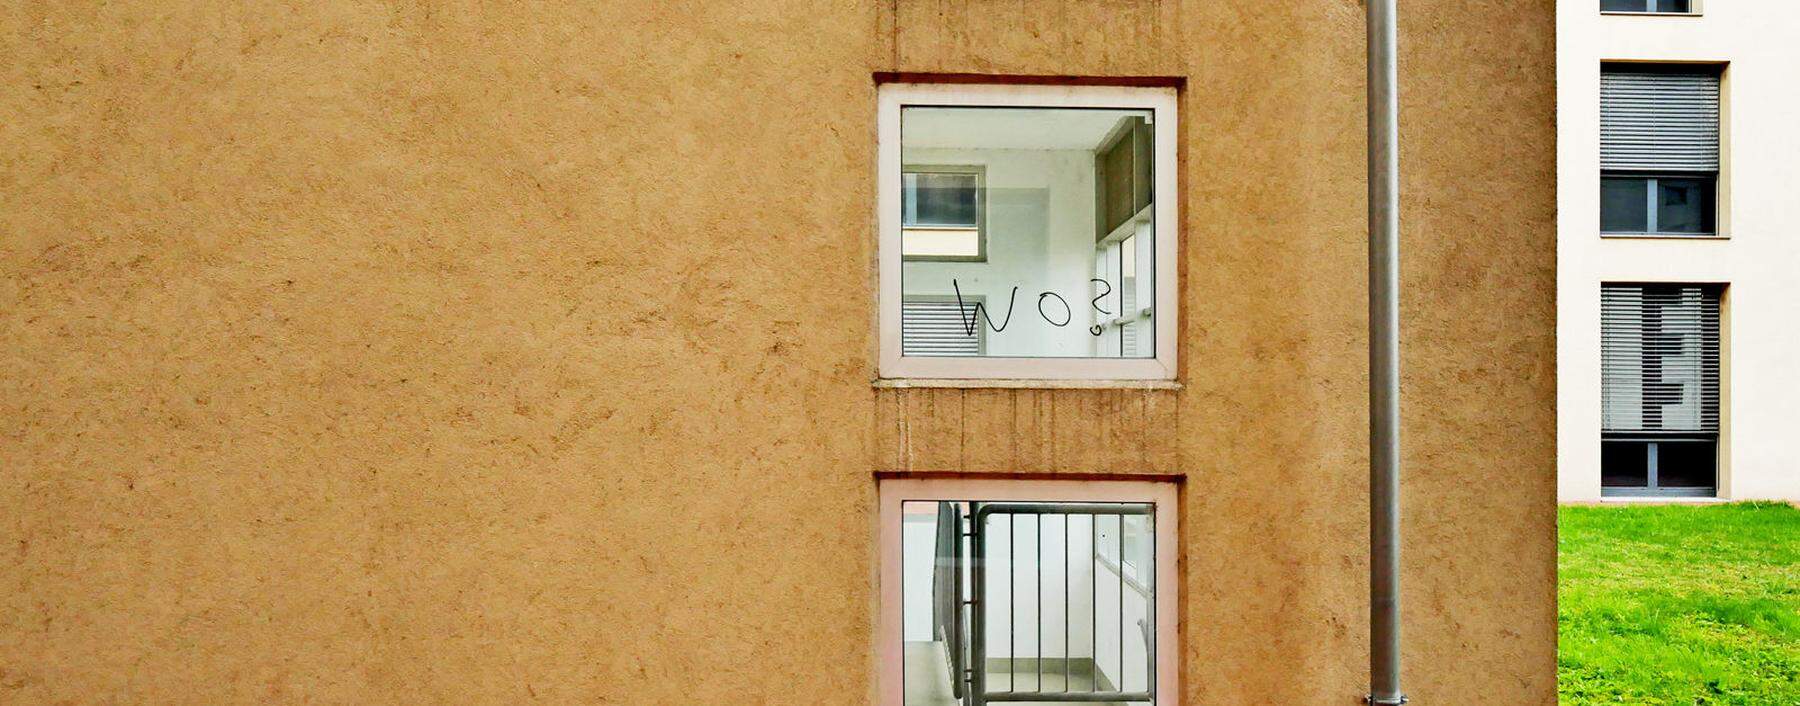 Politiker, Bauherren, Spekulanten, Architekten können nur das tun, was wir sie tun lassen. Ein Bild aus Wien.